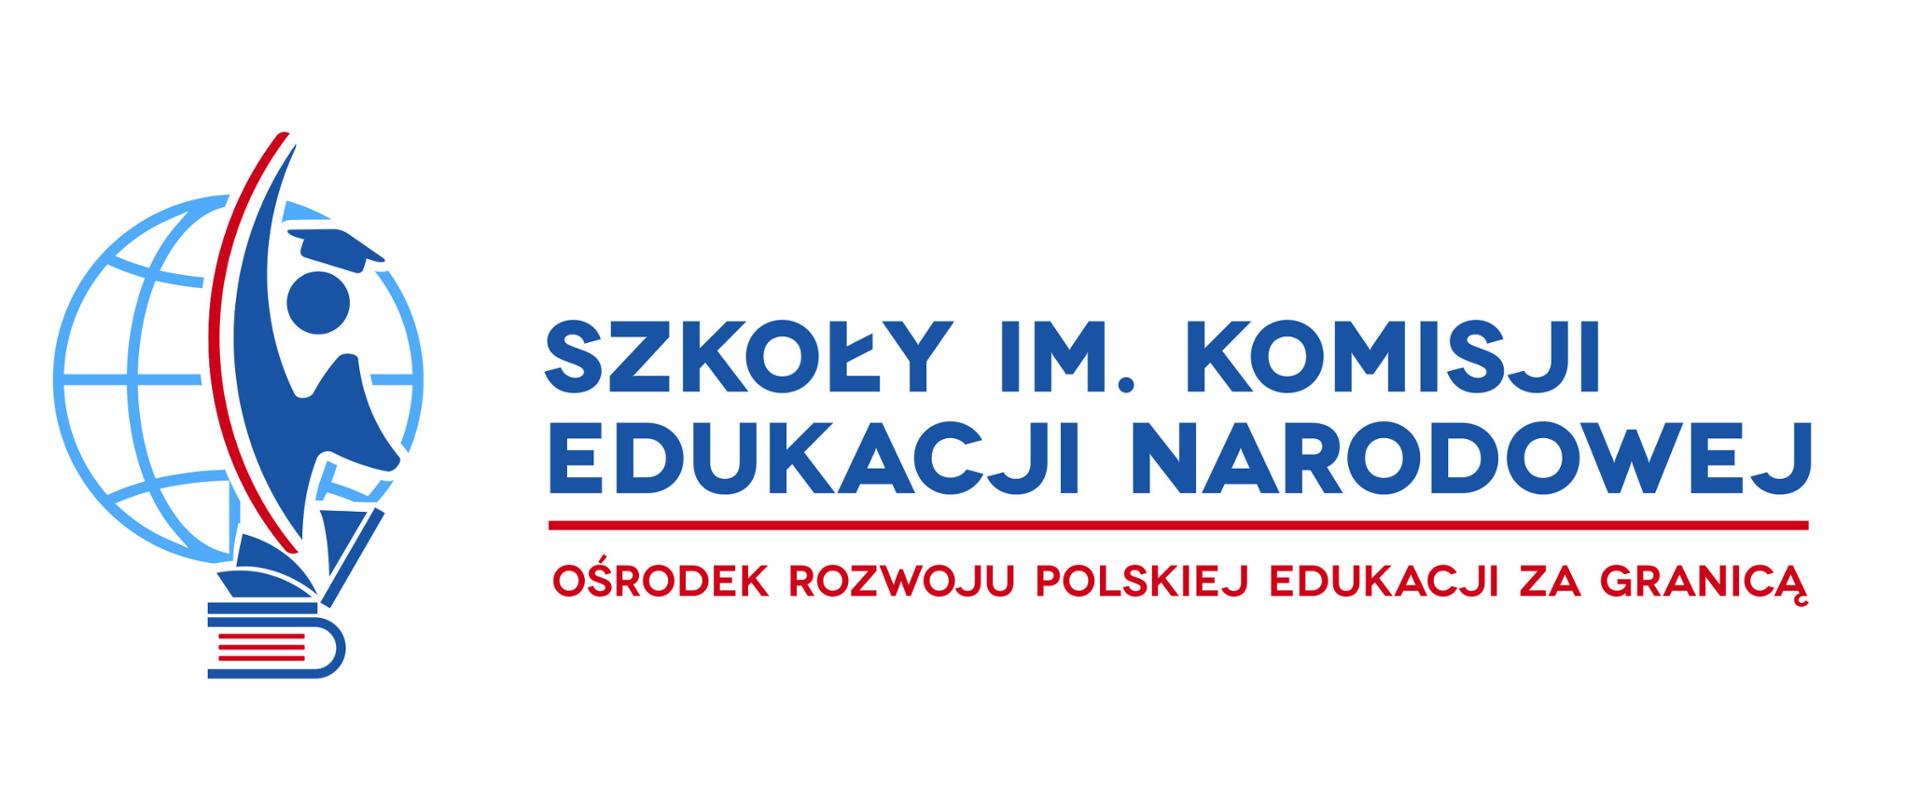 Ośrodek Rozwoju Polskiej Edukacji za Granicą
rozpoczął rekrutację do szkół w systemie kształcenia na odległość w ramach Szkoły Podstawowej im. Komisji Edukacji Narodowej oraz Liceum im. Komisji Edukacji Narodowej